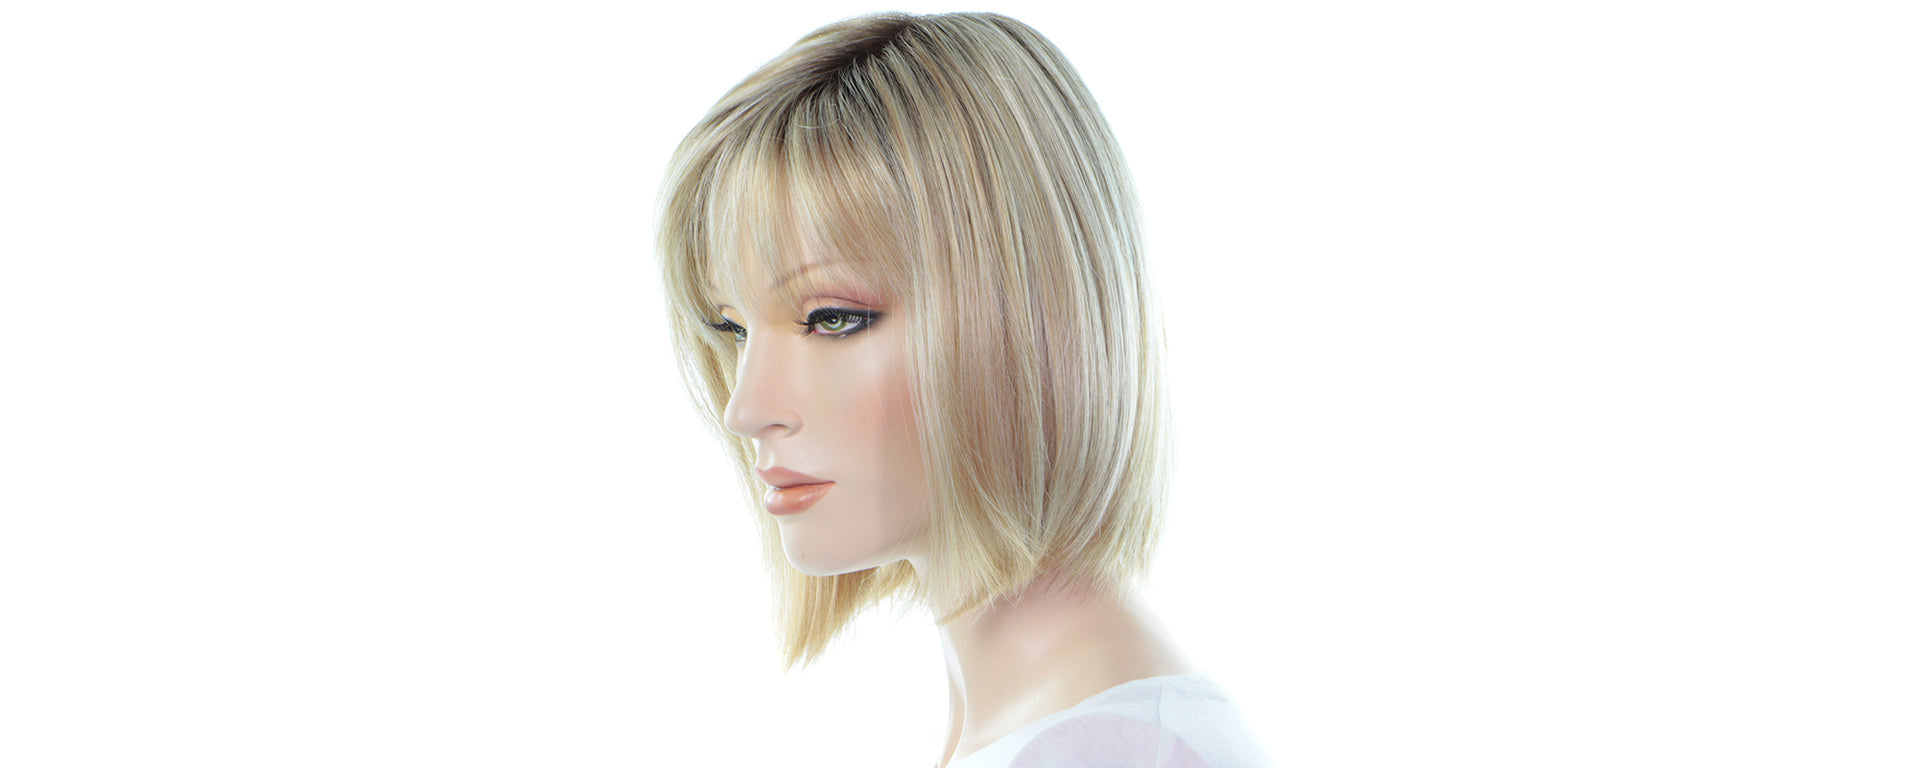 Perruque: Savoir Comment Choisir - Photo D'une Perruque Blonde Lisse